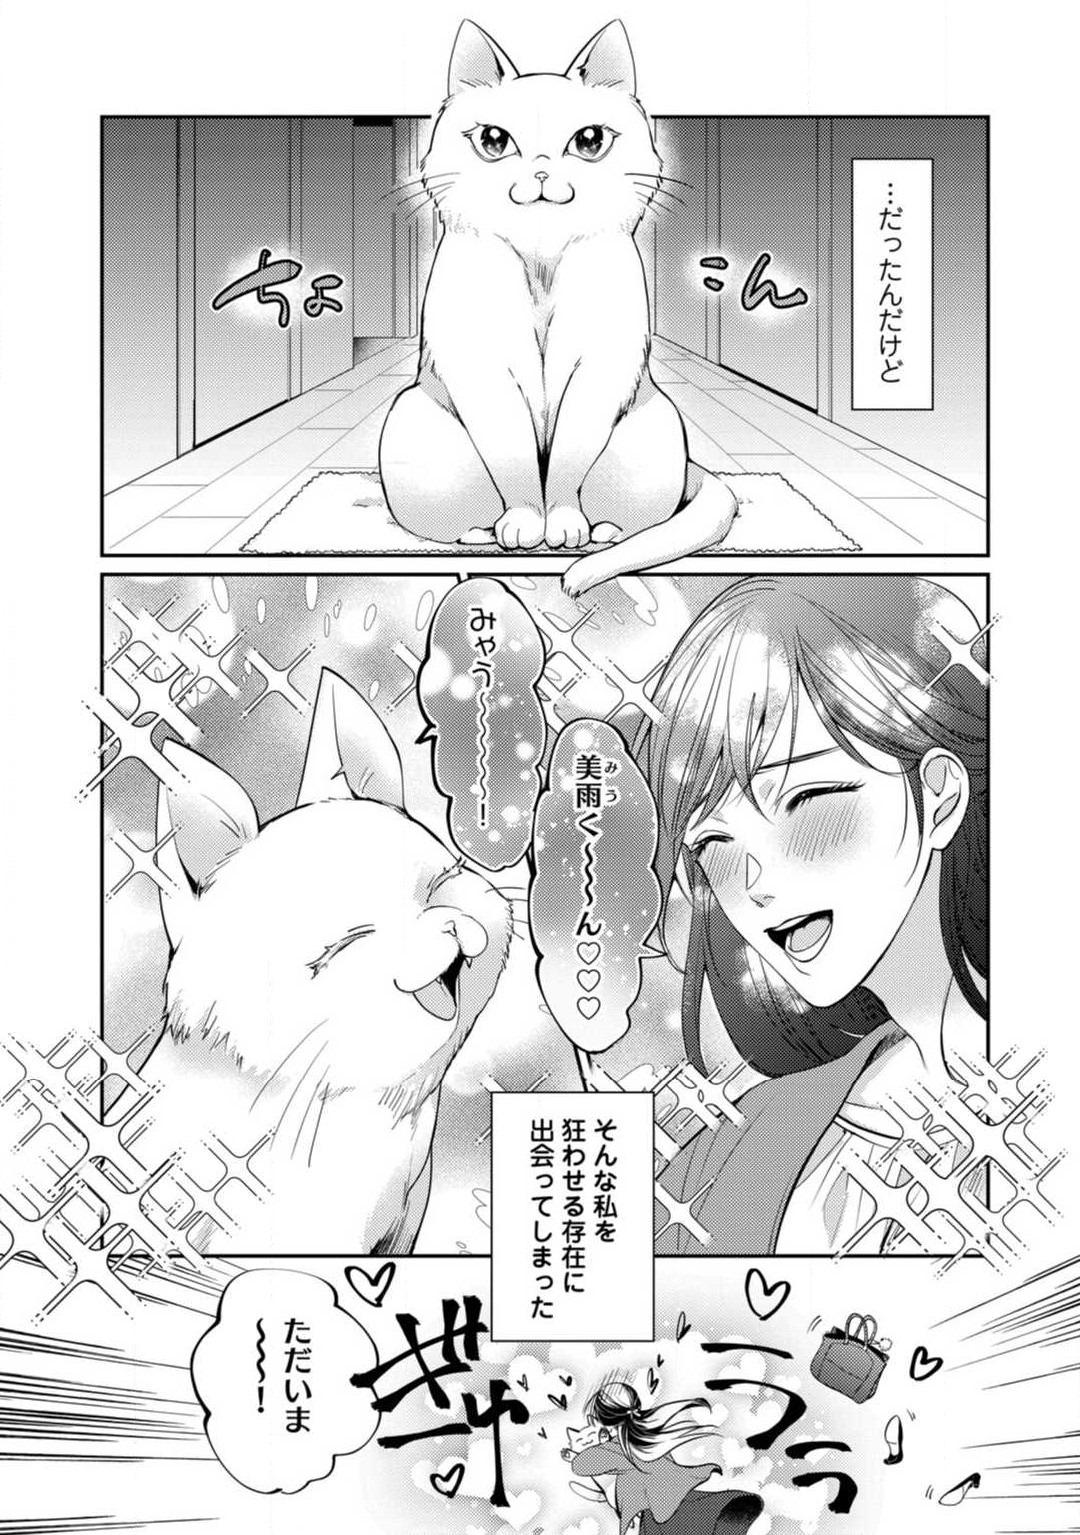 Wives [Yoshimi Kiyo] Ai no Kaikata Amaekata ~Shironeko Kareshi wa Watashi no Mune ga Okiniiri~ 1-3 Threesome - Page 4